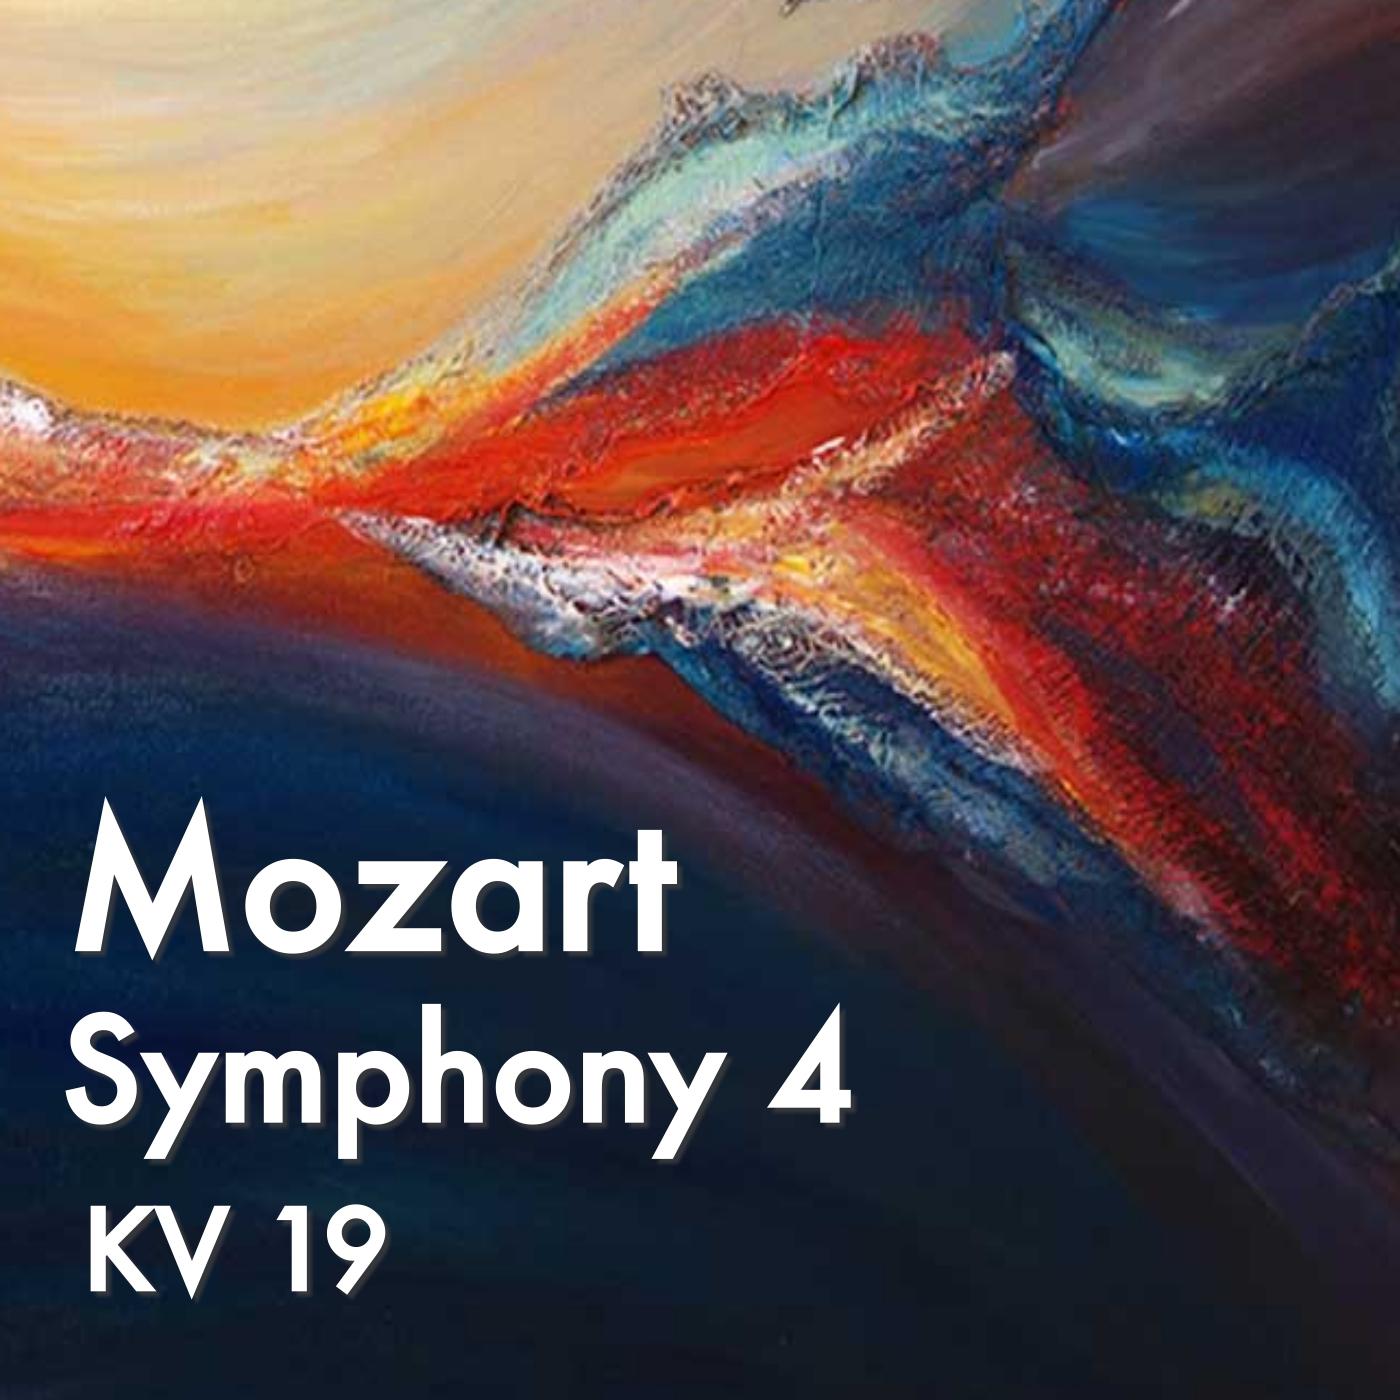 Mozart Symphony 4, KV 19